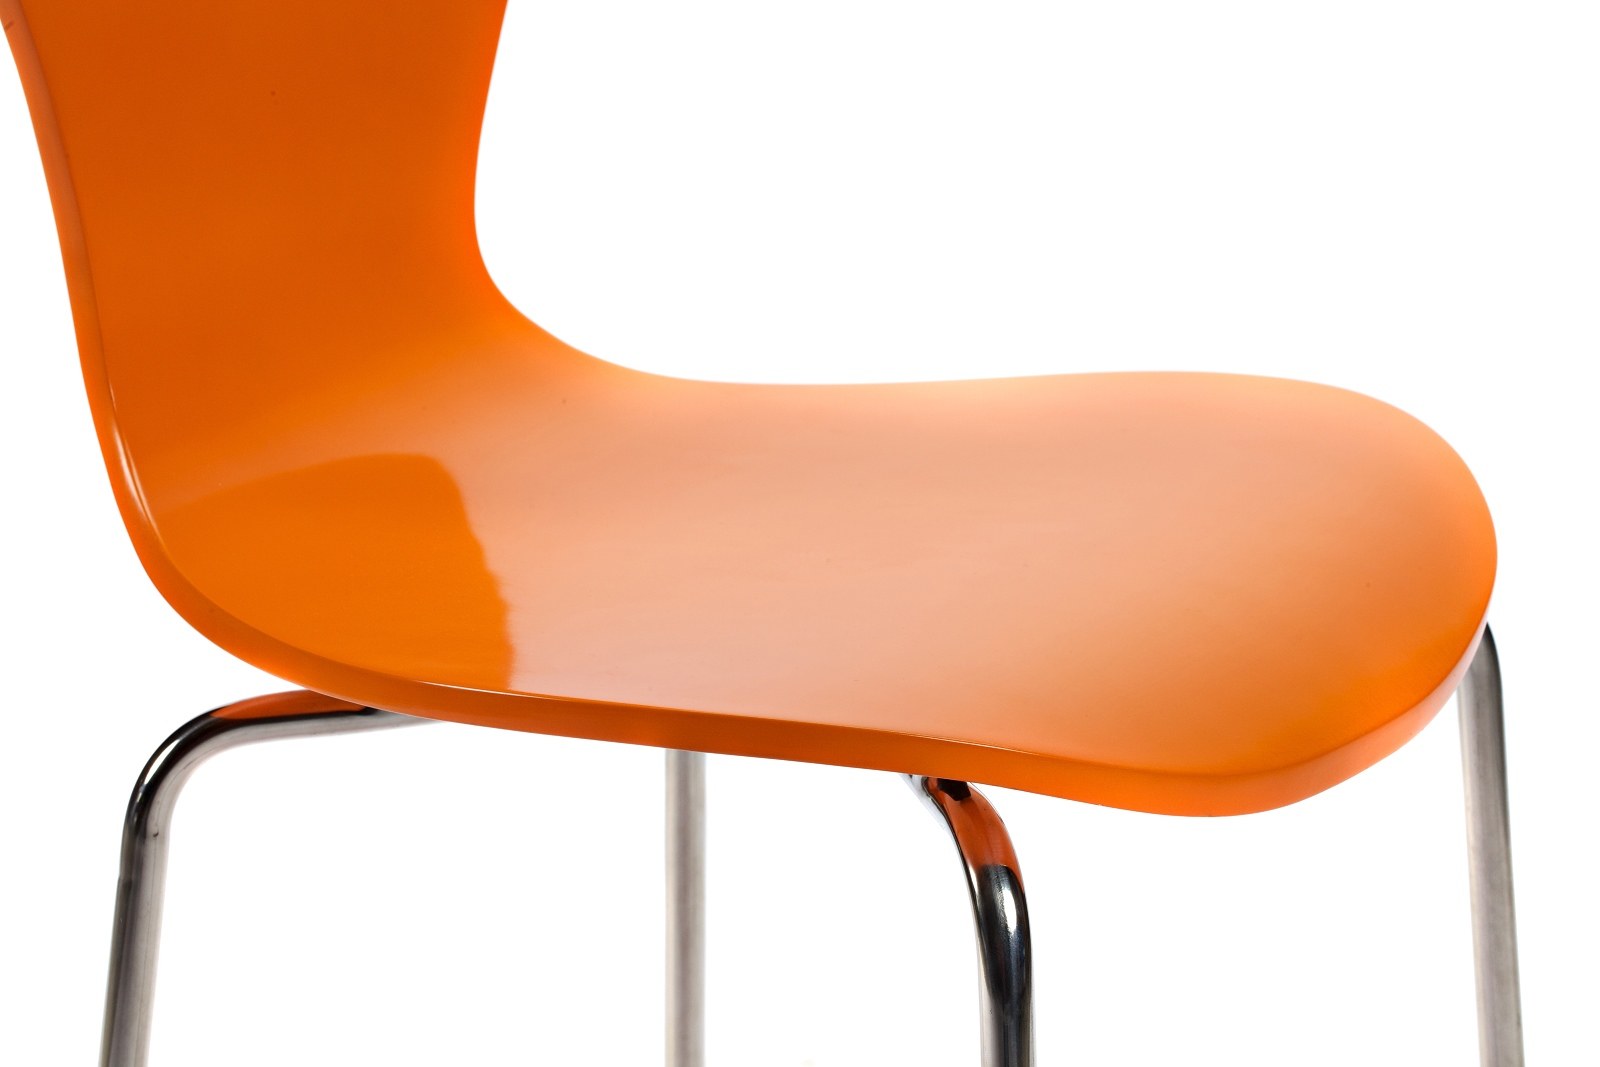 Стулья купить интернет магазин москва. Стул Ant Chair оранжевый металл. Стул Rich оранжевый (алюмин.ножки). Стул кухонный металлический ножки хром красный пластиковый (арт 6632). Стул (b68 or, металл/экокожа, оранжевый, s).